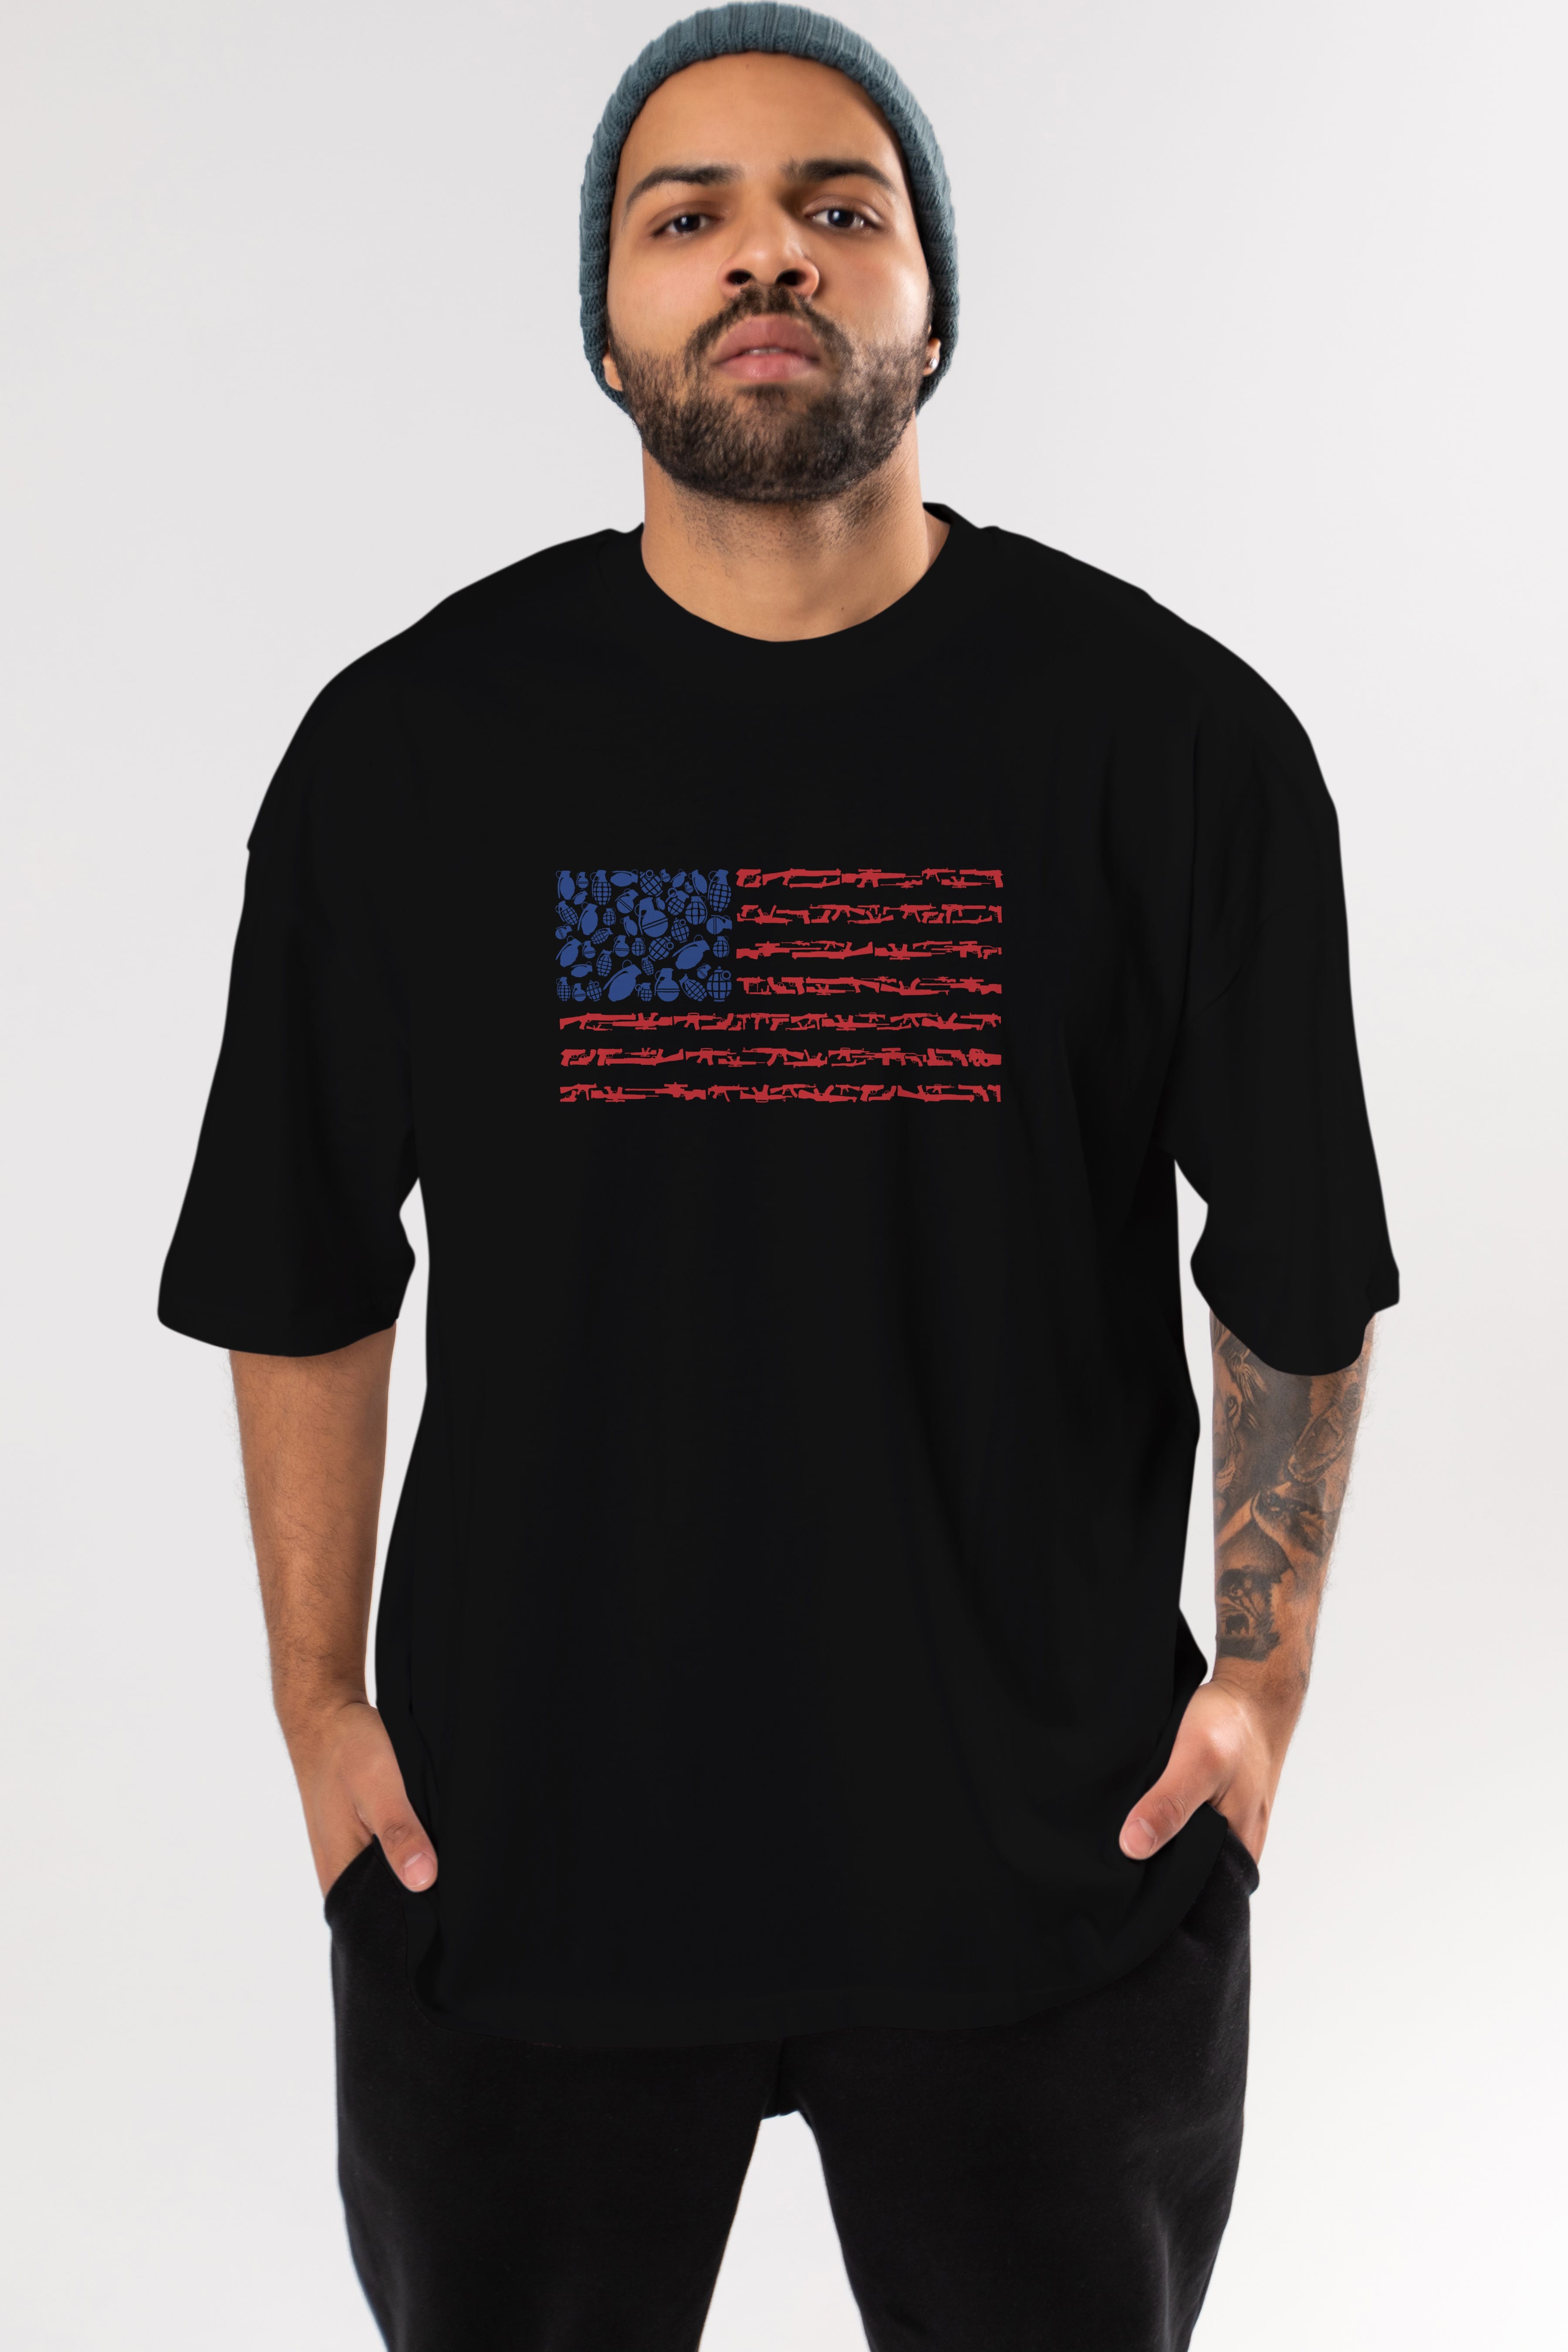 Weapon Flag Ön Baskılı Oversize t-shirt %100 pamuk Erkek Kadın Unisex